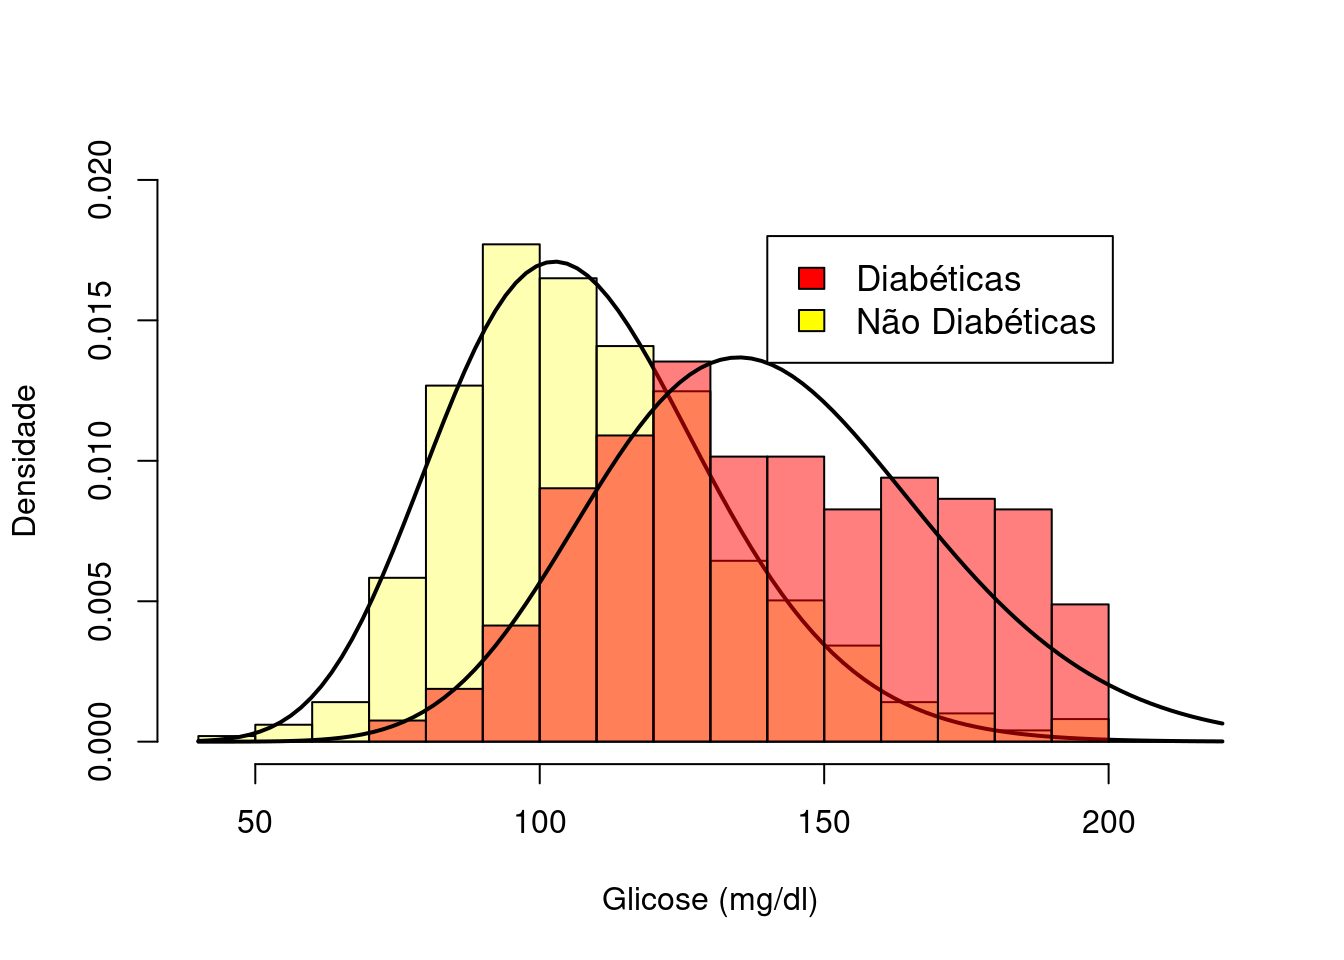 Histogramas da glicose de pacientes diabéticas e não diabéticas sobrepostos. Conjunto de dados: PimaIndiansDiabetes2 (Leisch and Dimitriadou 2010) (GPL-2).